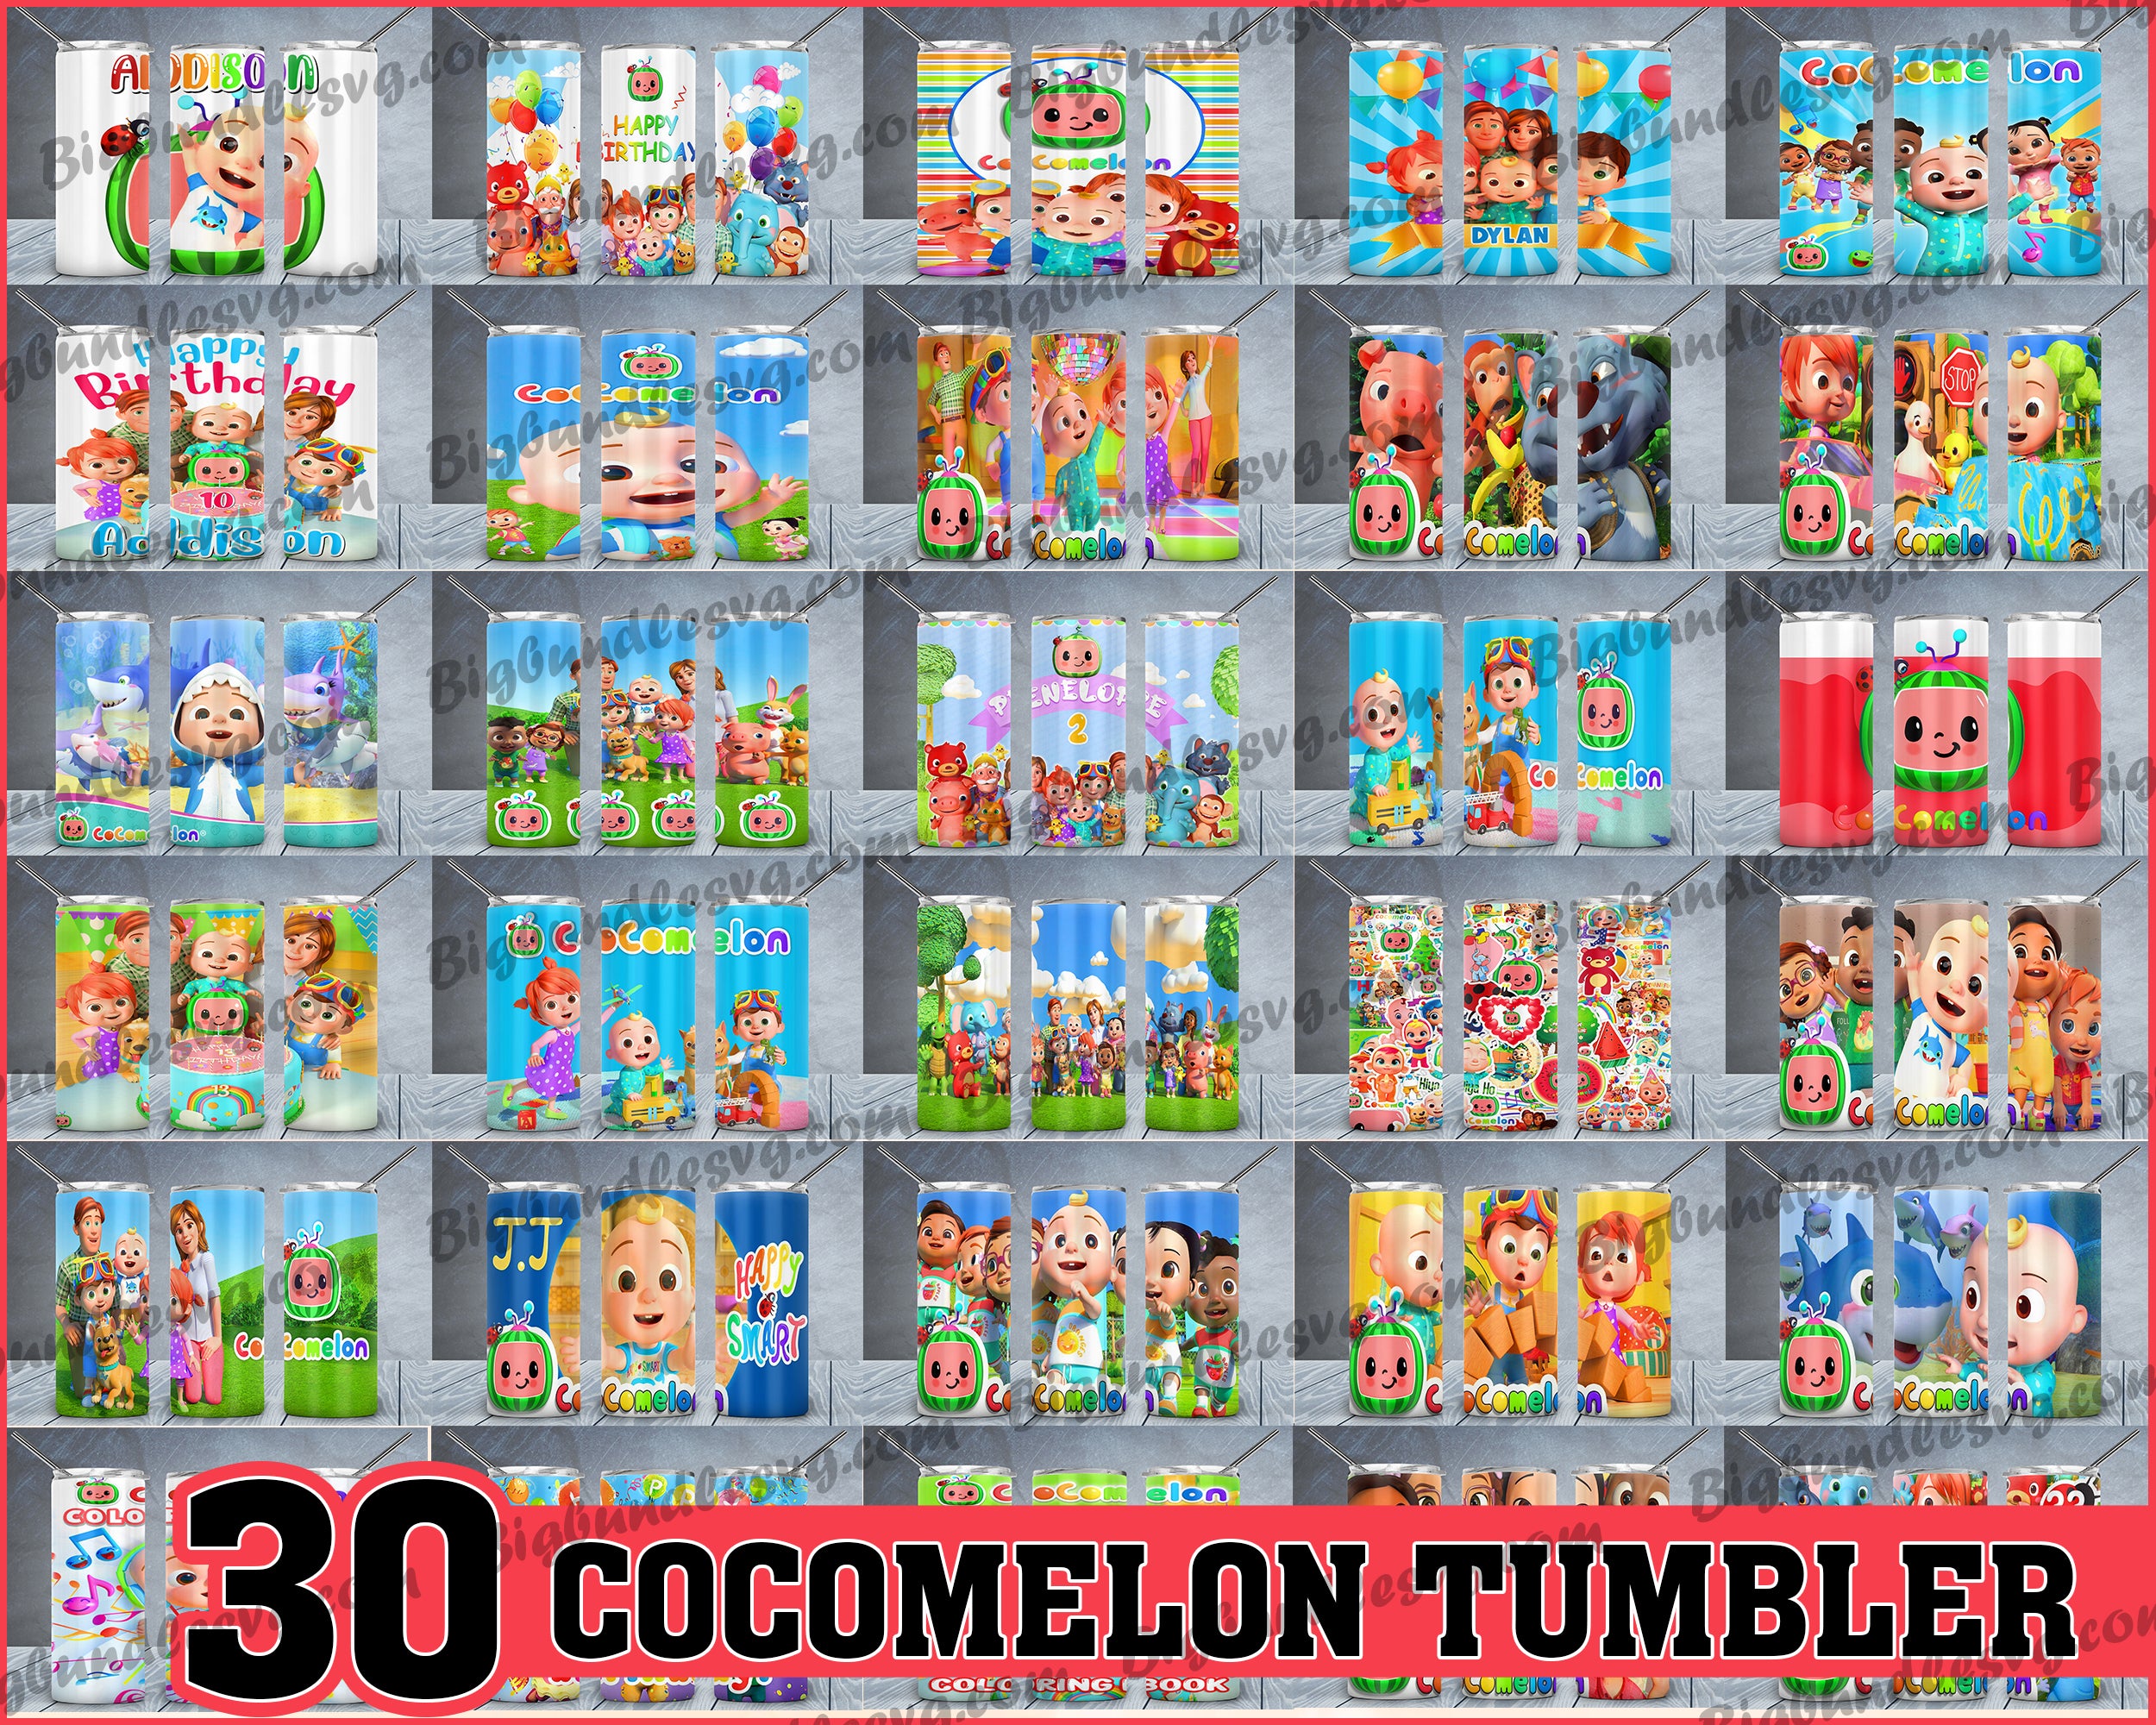 Cocomelon Tumbler - Cocomelon PNG - Tumbler design - Digital download